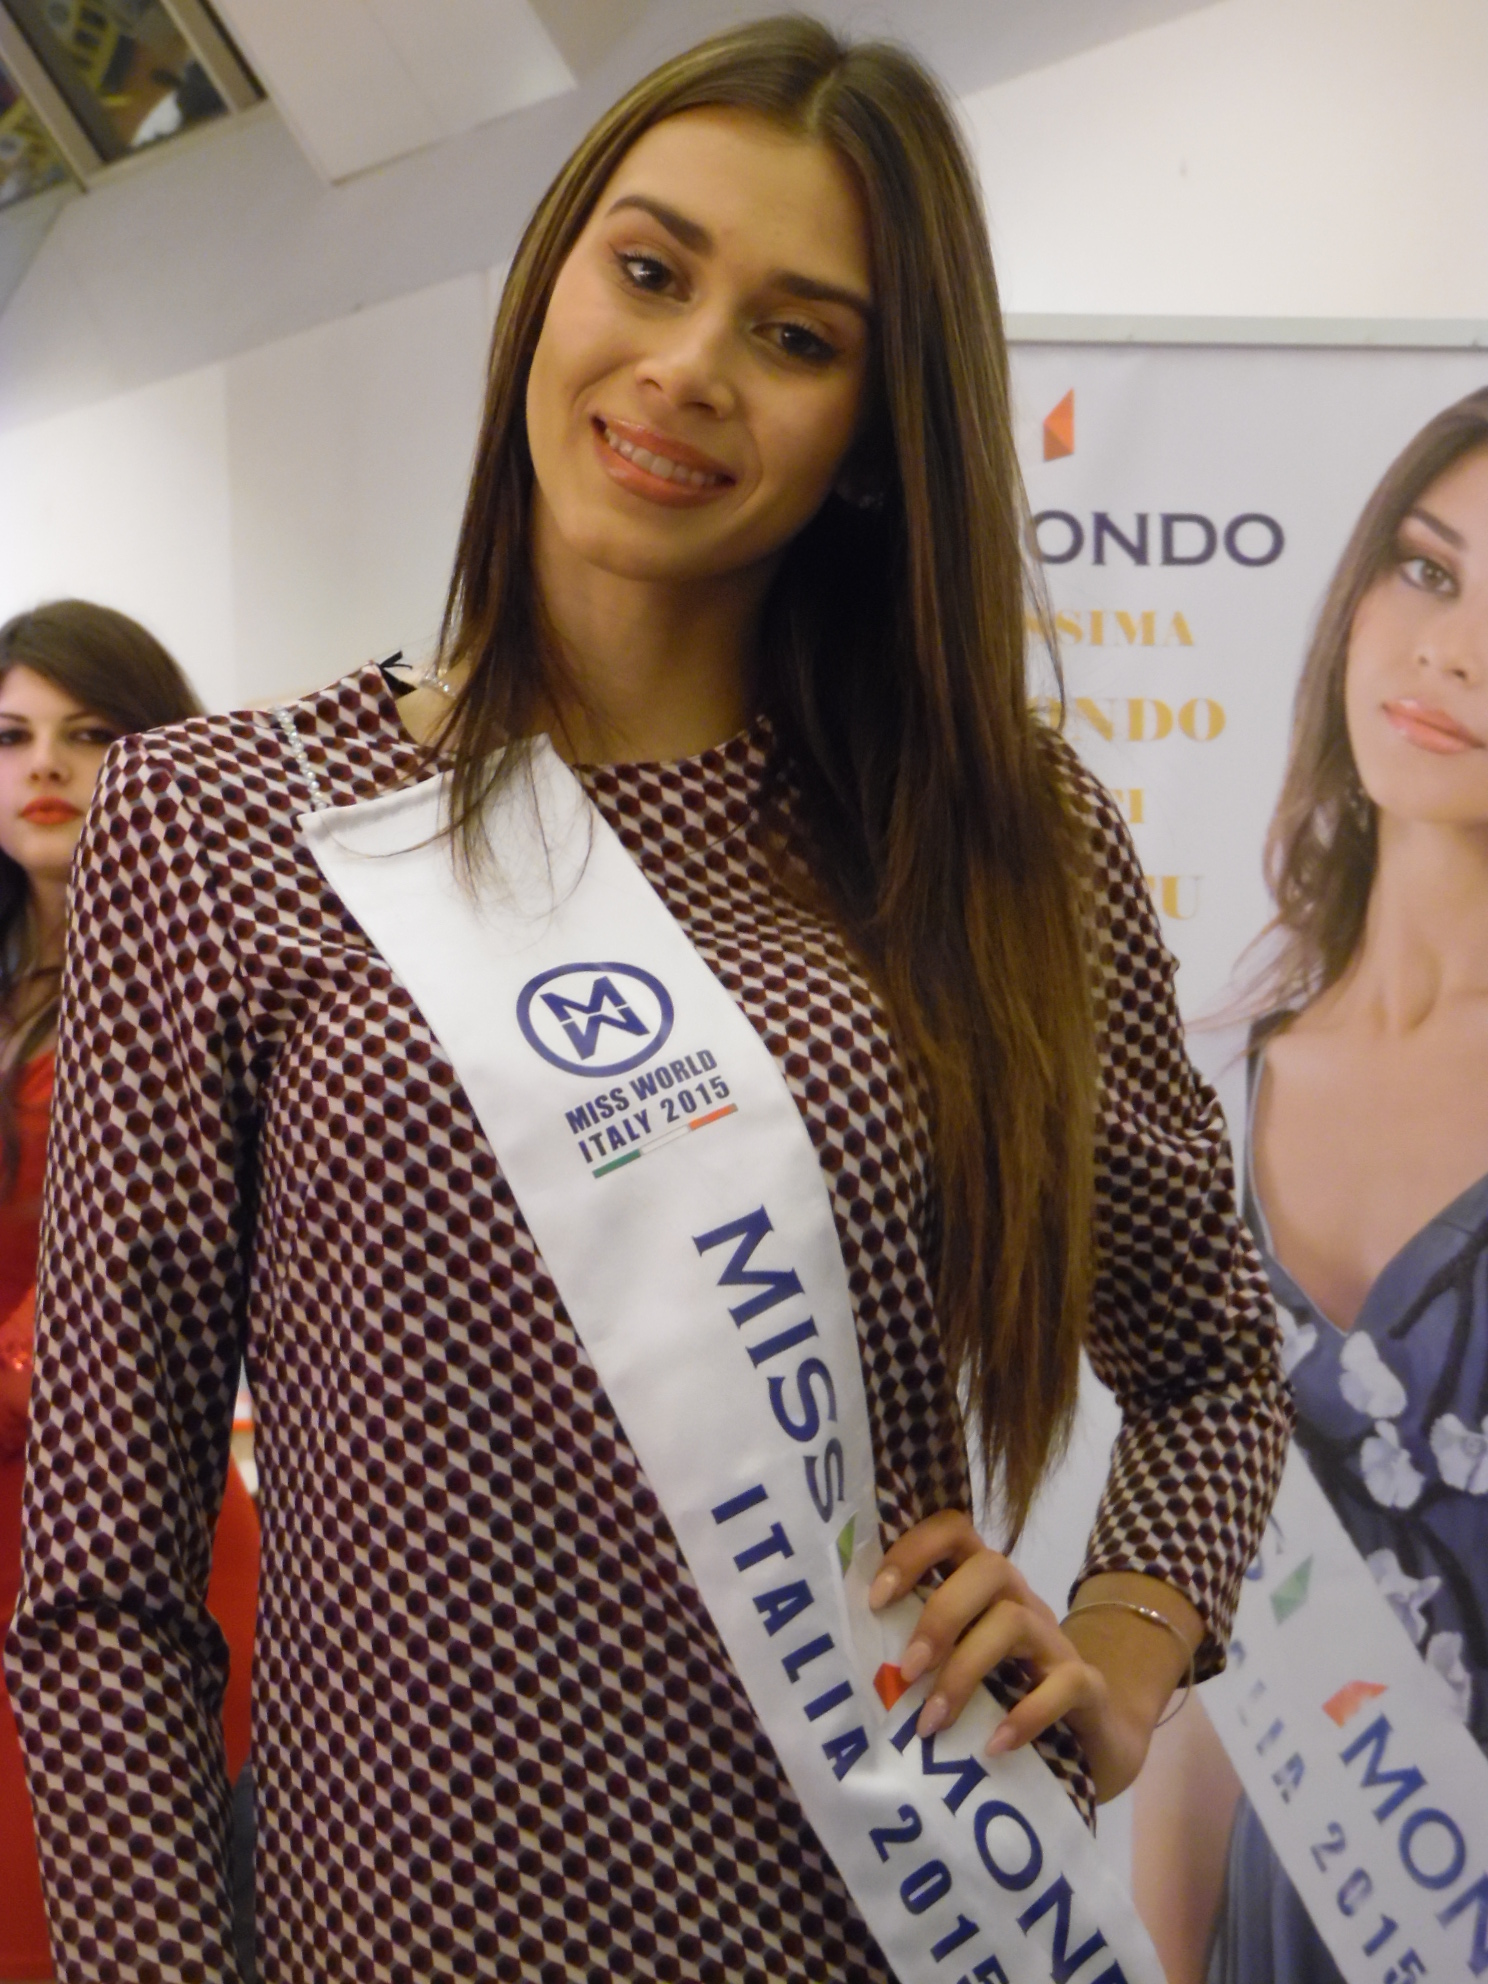 Intervista a Miss Mondo Italia: ragazze siate sempre voi stesse, autentiche e semplici